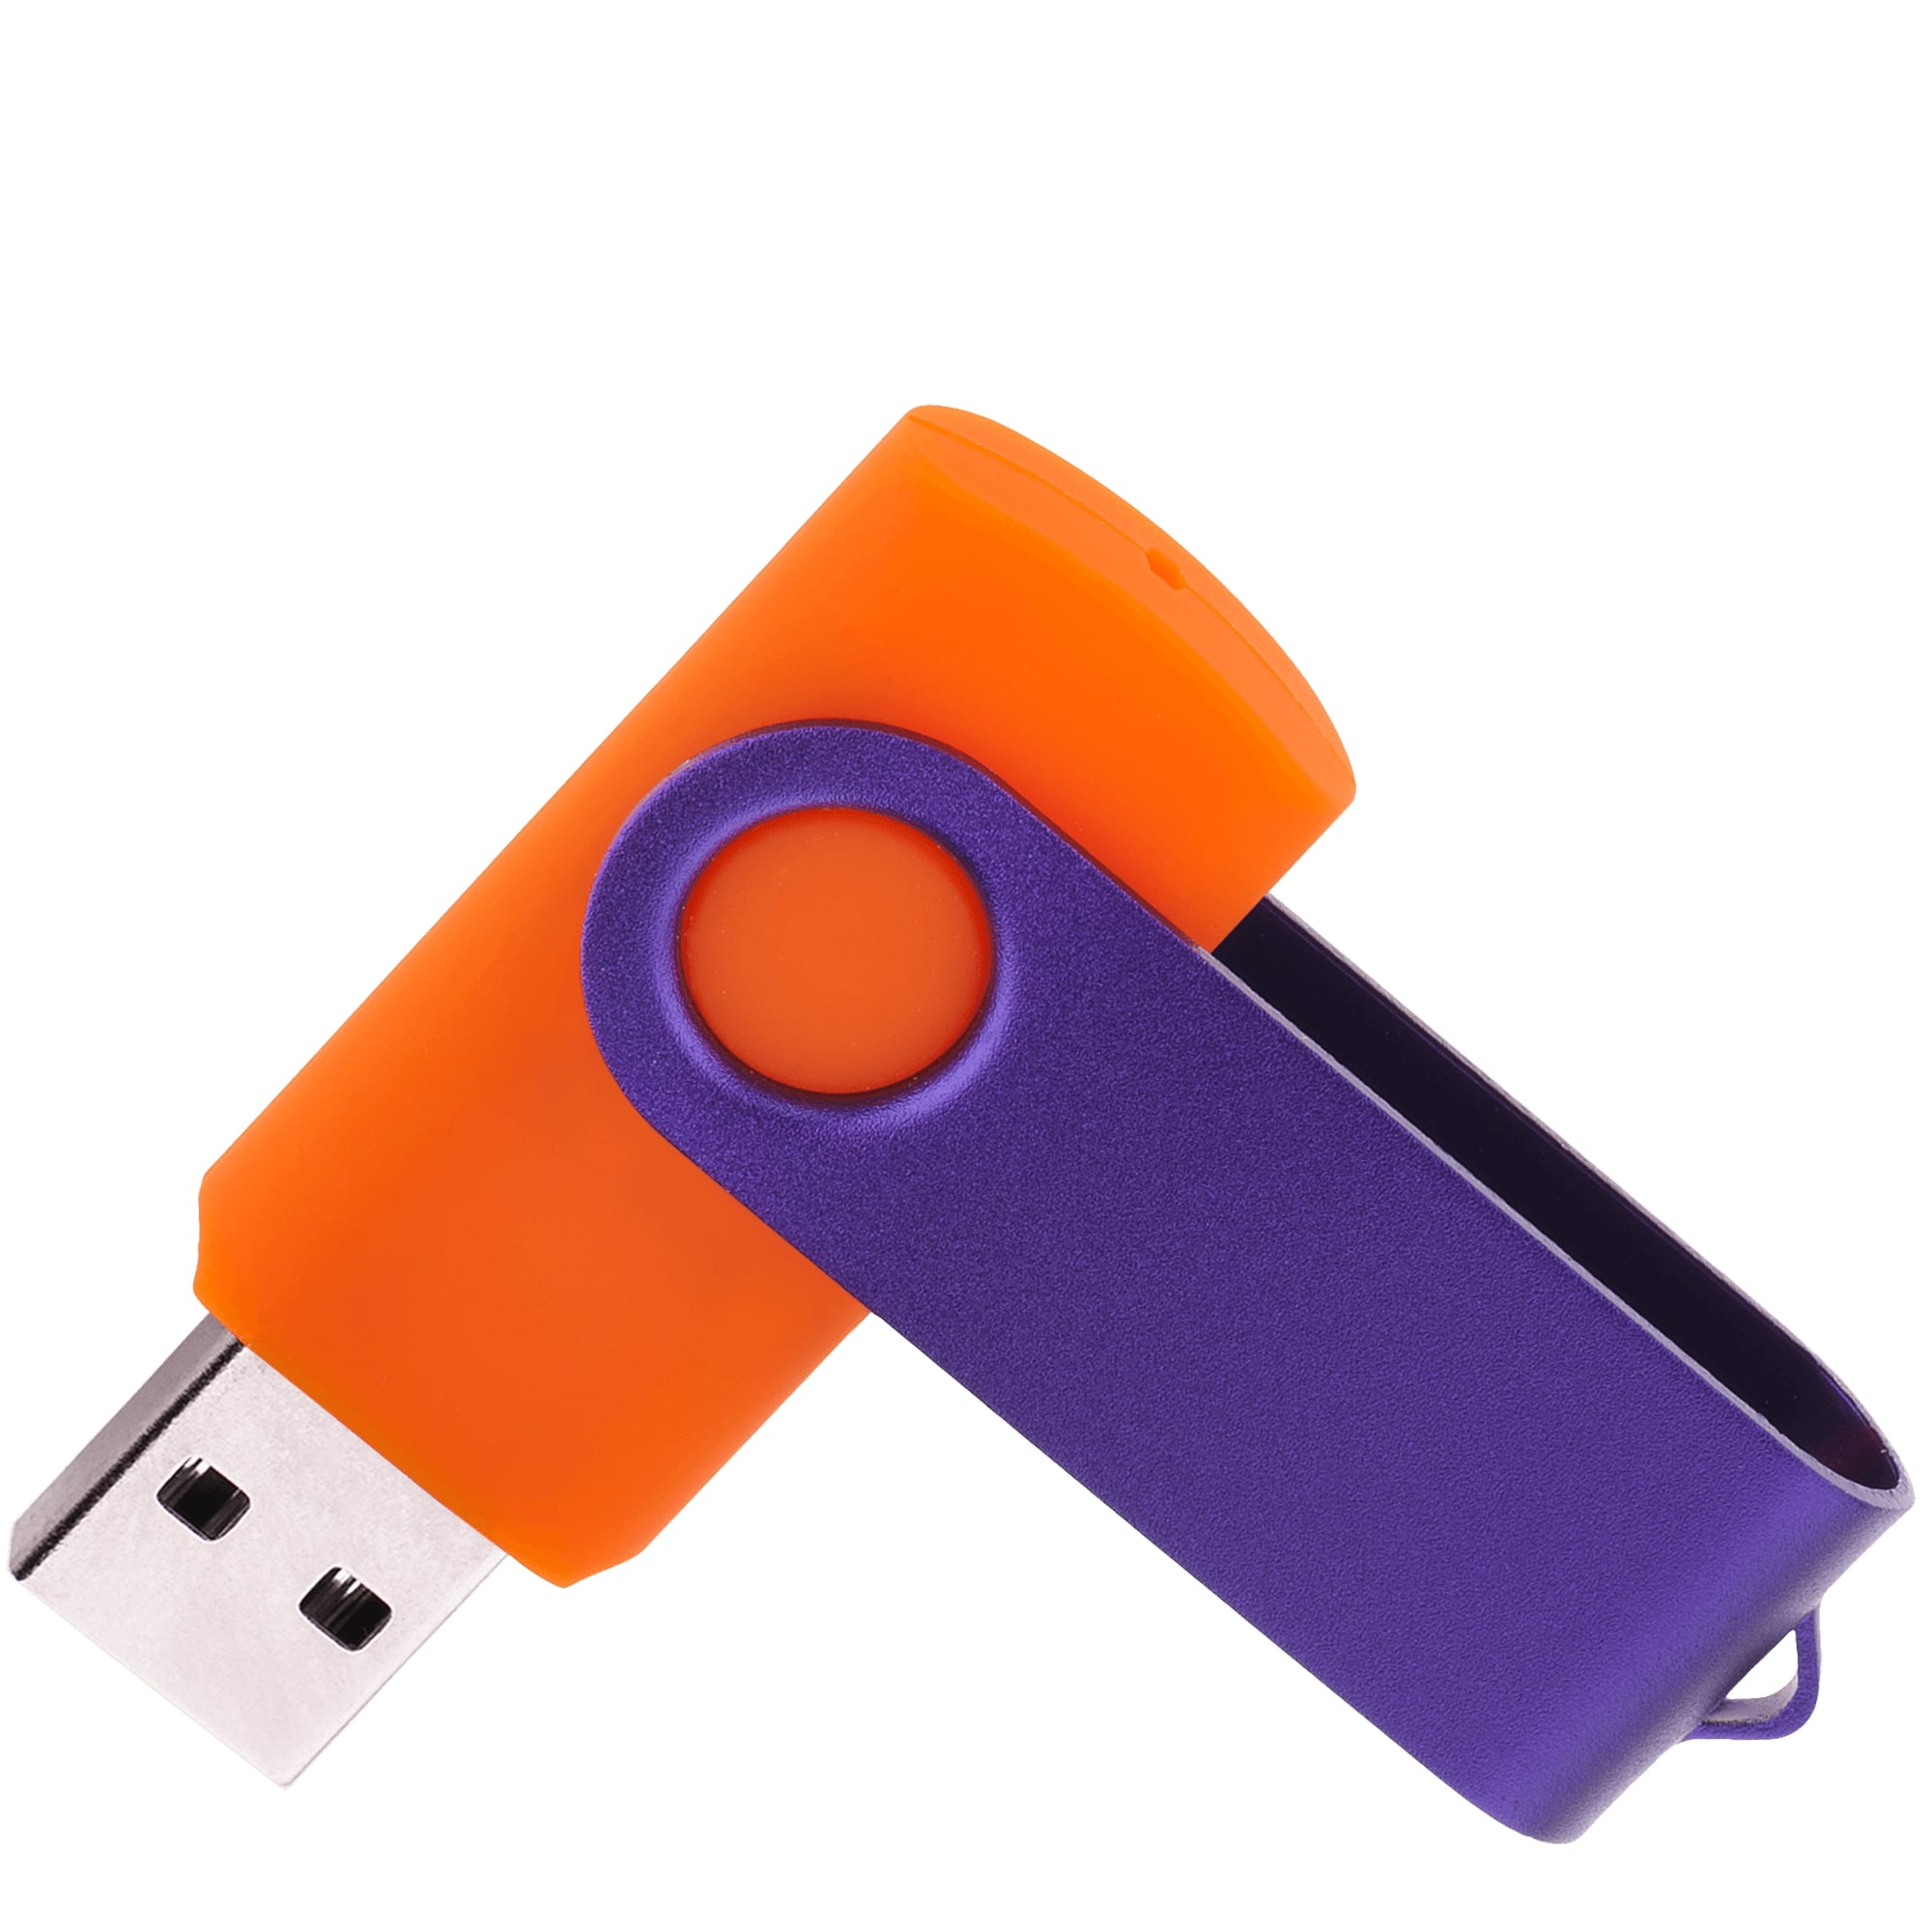 Флешка TWIST COLOR MIX Оранжевая с фиолетовым 4016.05.11.64ГБ